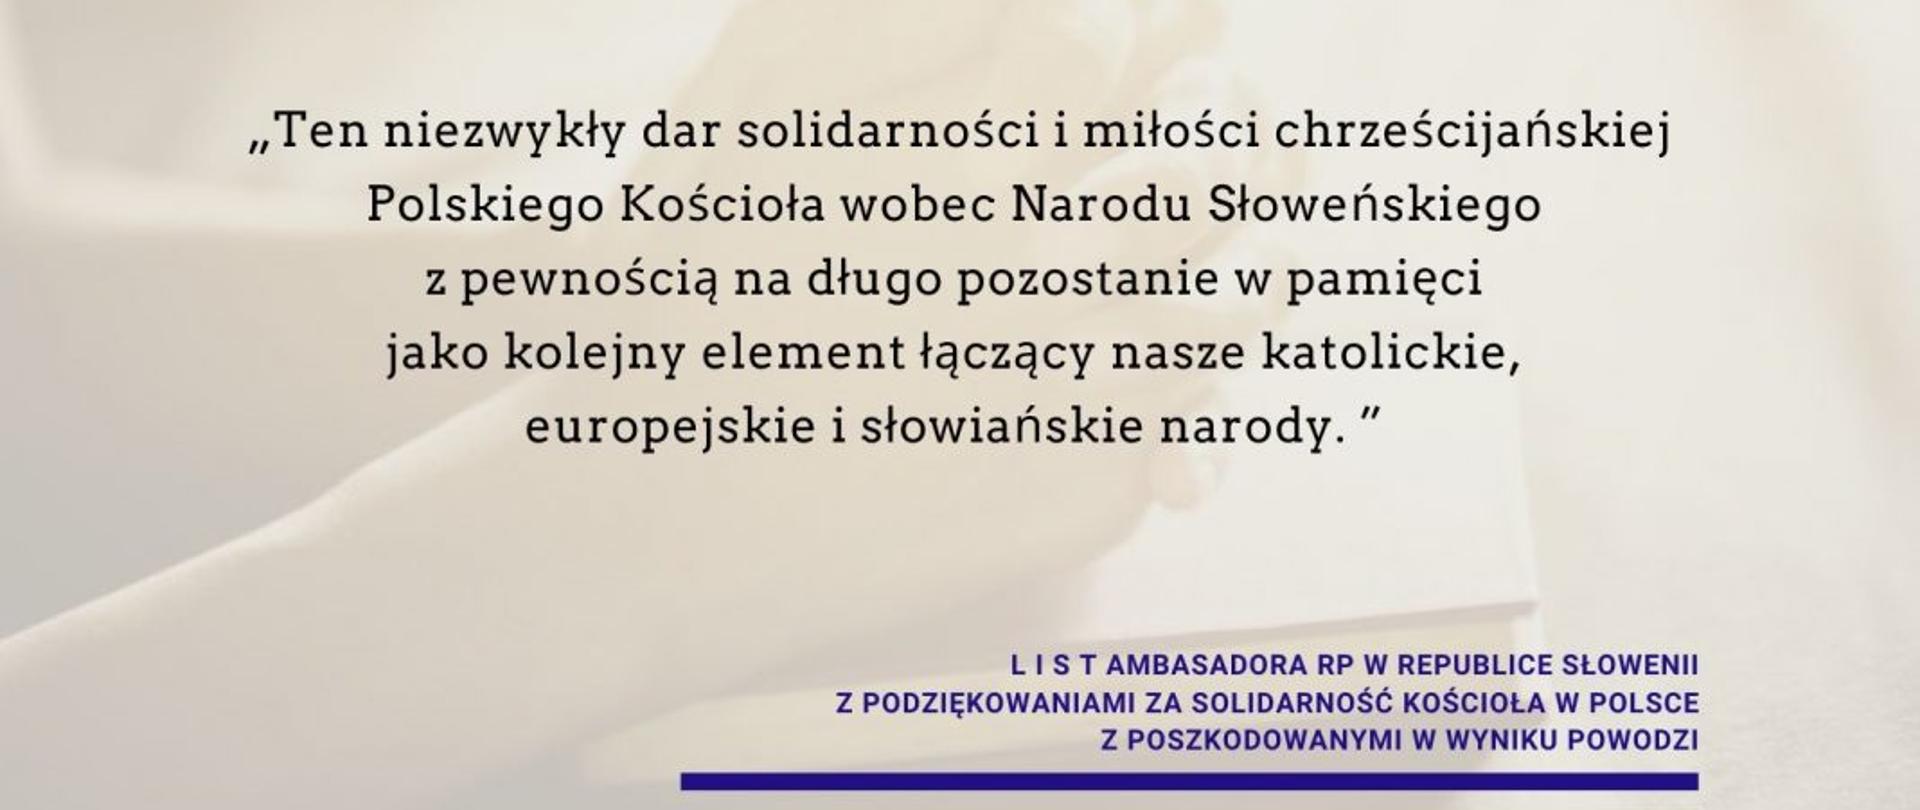 Podziękowanie Ambasadora RP Krzysztofa Olendzkiego za solidarność Kościoła w Polsce z poszkodowanymi w wyniku powodzi w Słowenii